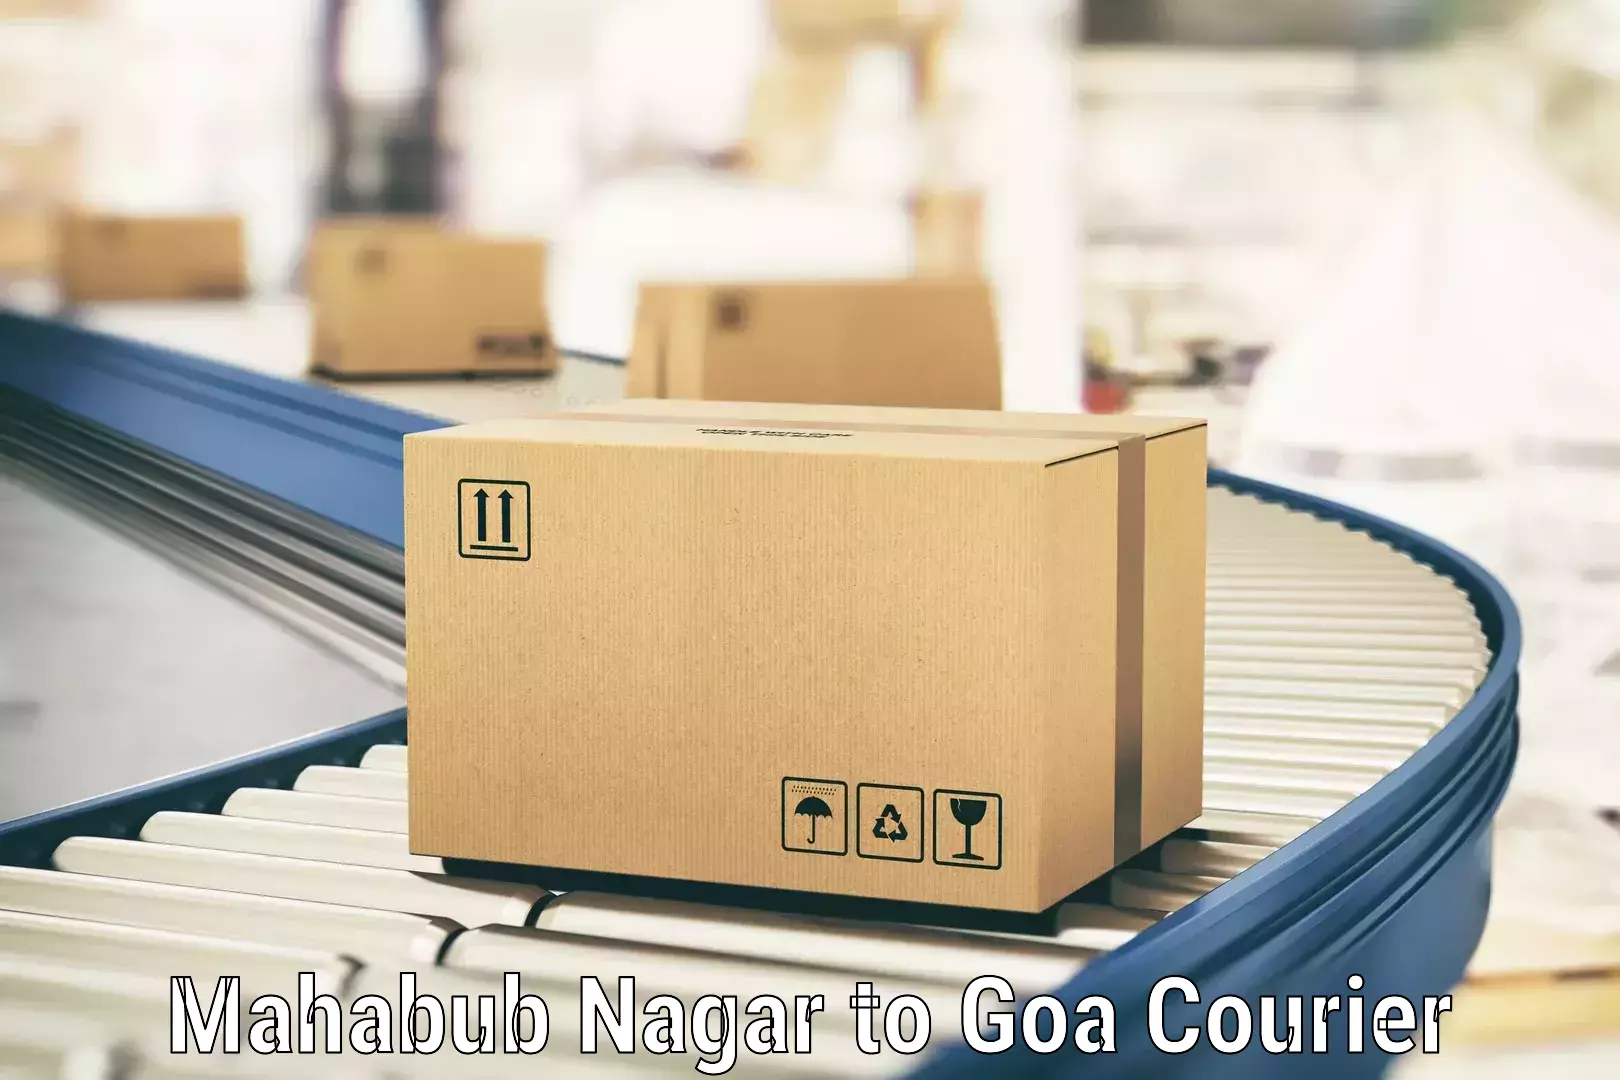 Full-service courier options Mahabub Nagar to Mormugao Port